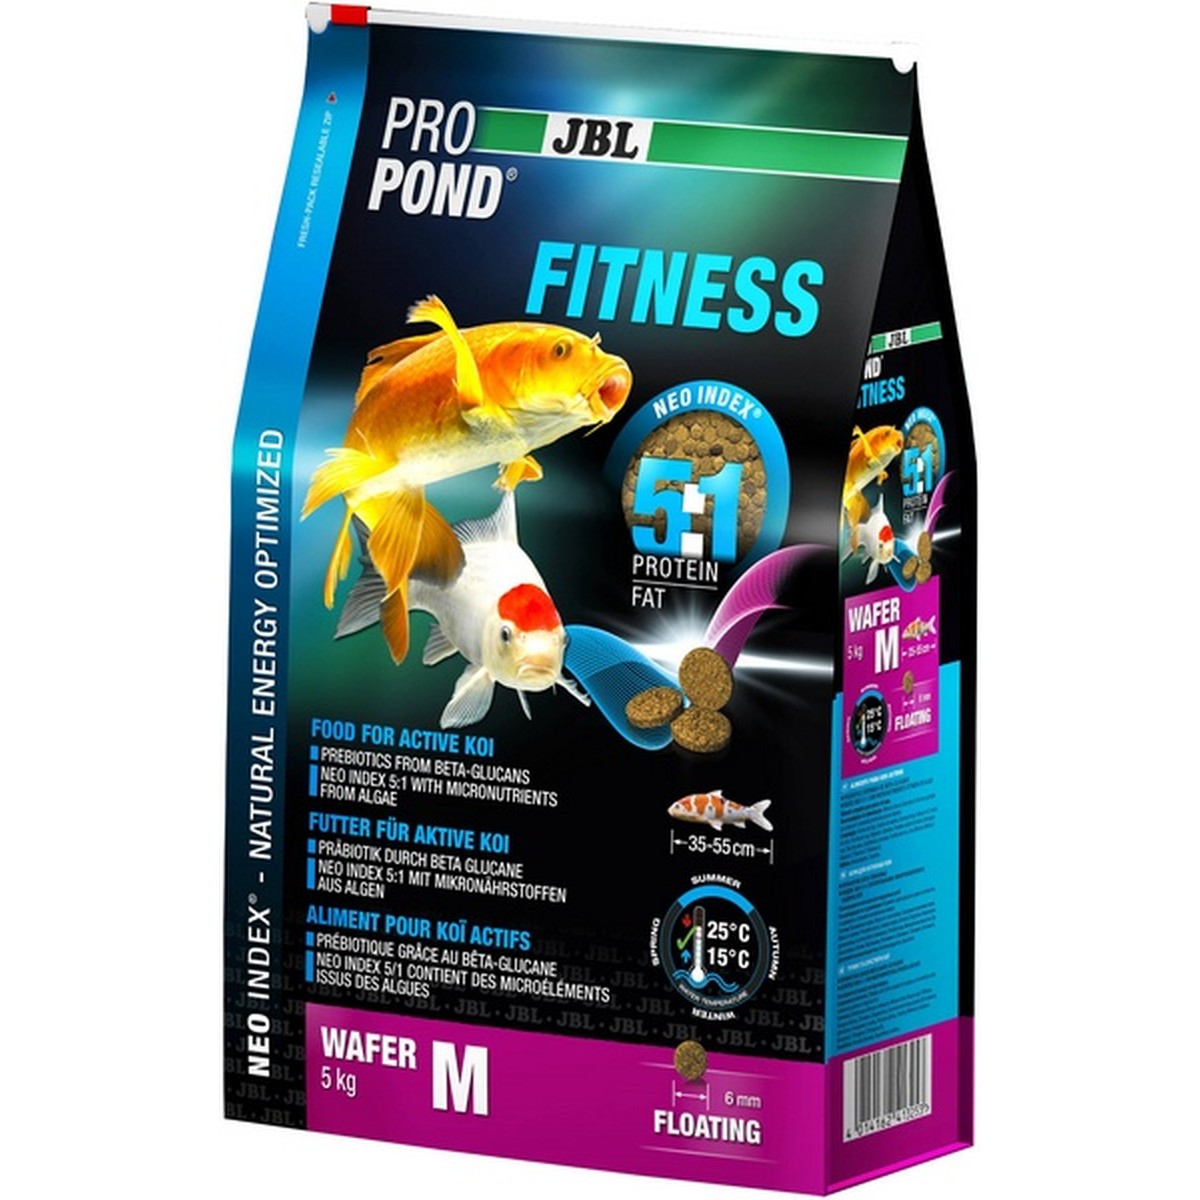   JBL ProPond Fitness M, 5 kg  5kg